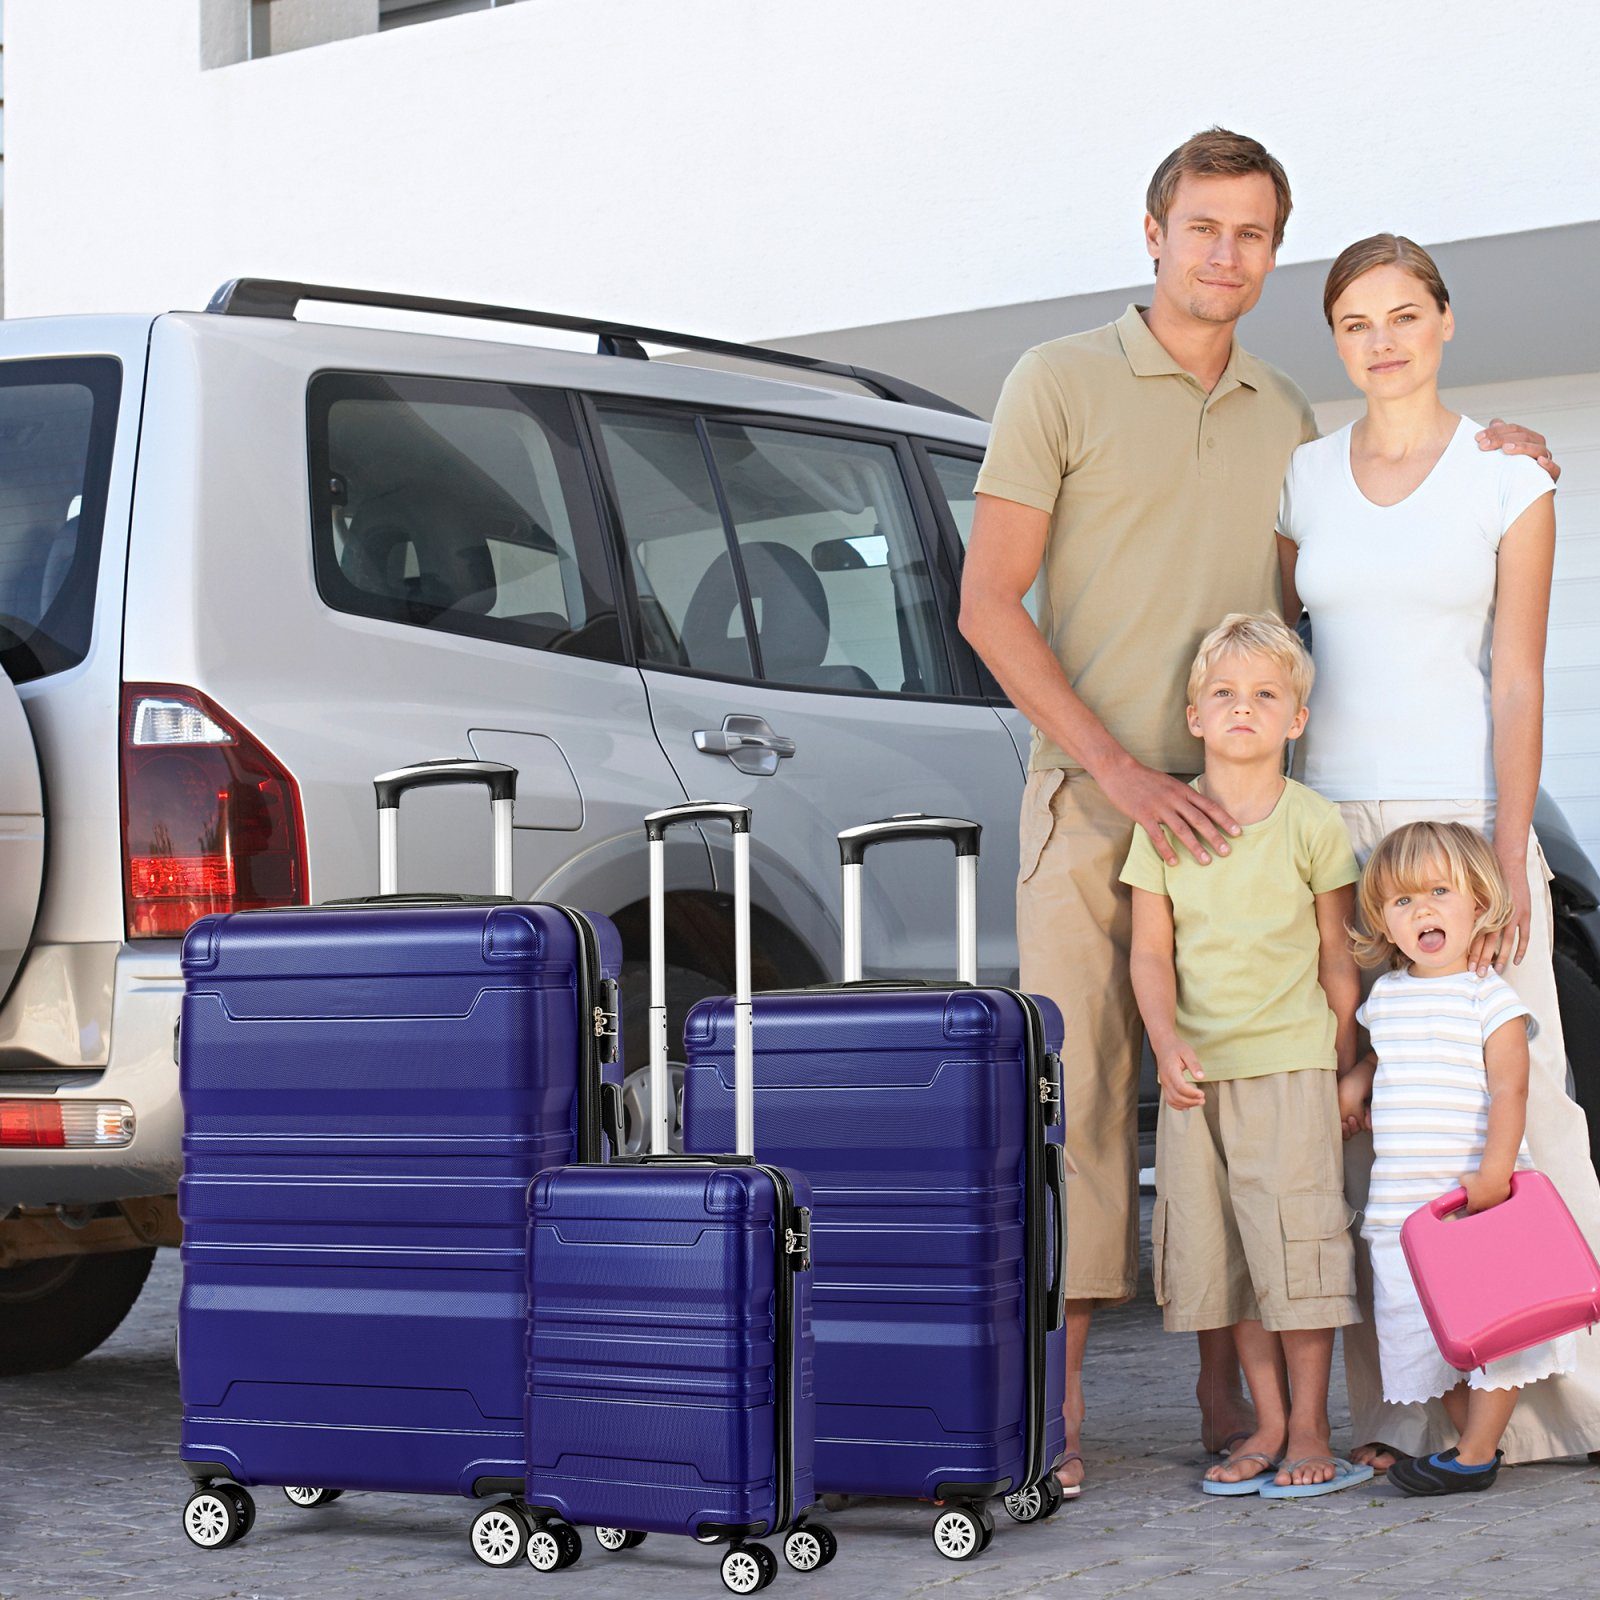 mit TSA-Schloss Blau Koffer-Set Hartschalen-Handgepäck, Koffer Hochwertiges Trolleyset Universalrad 3-teiliges und SEEZSSA